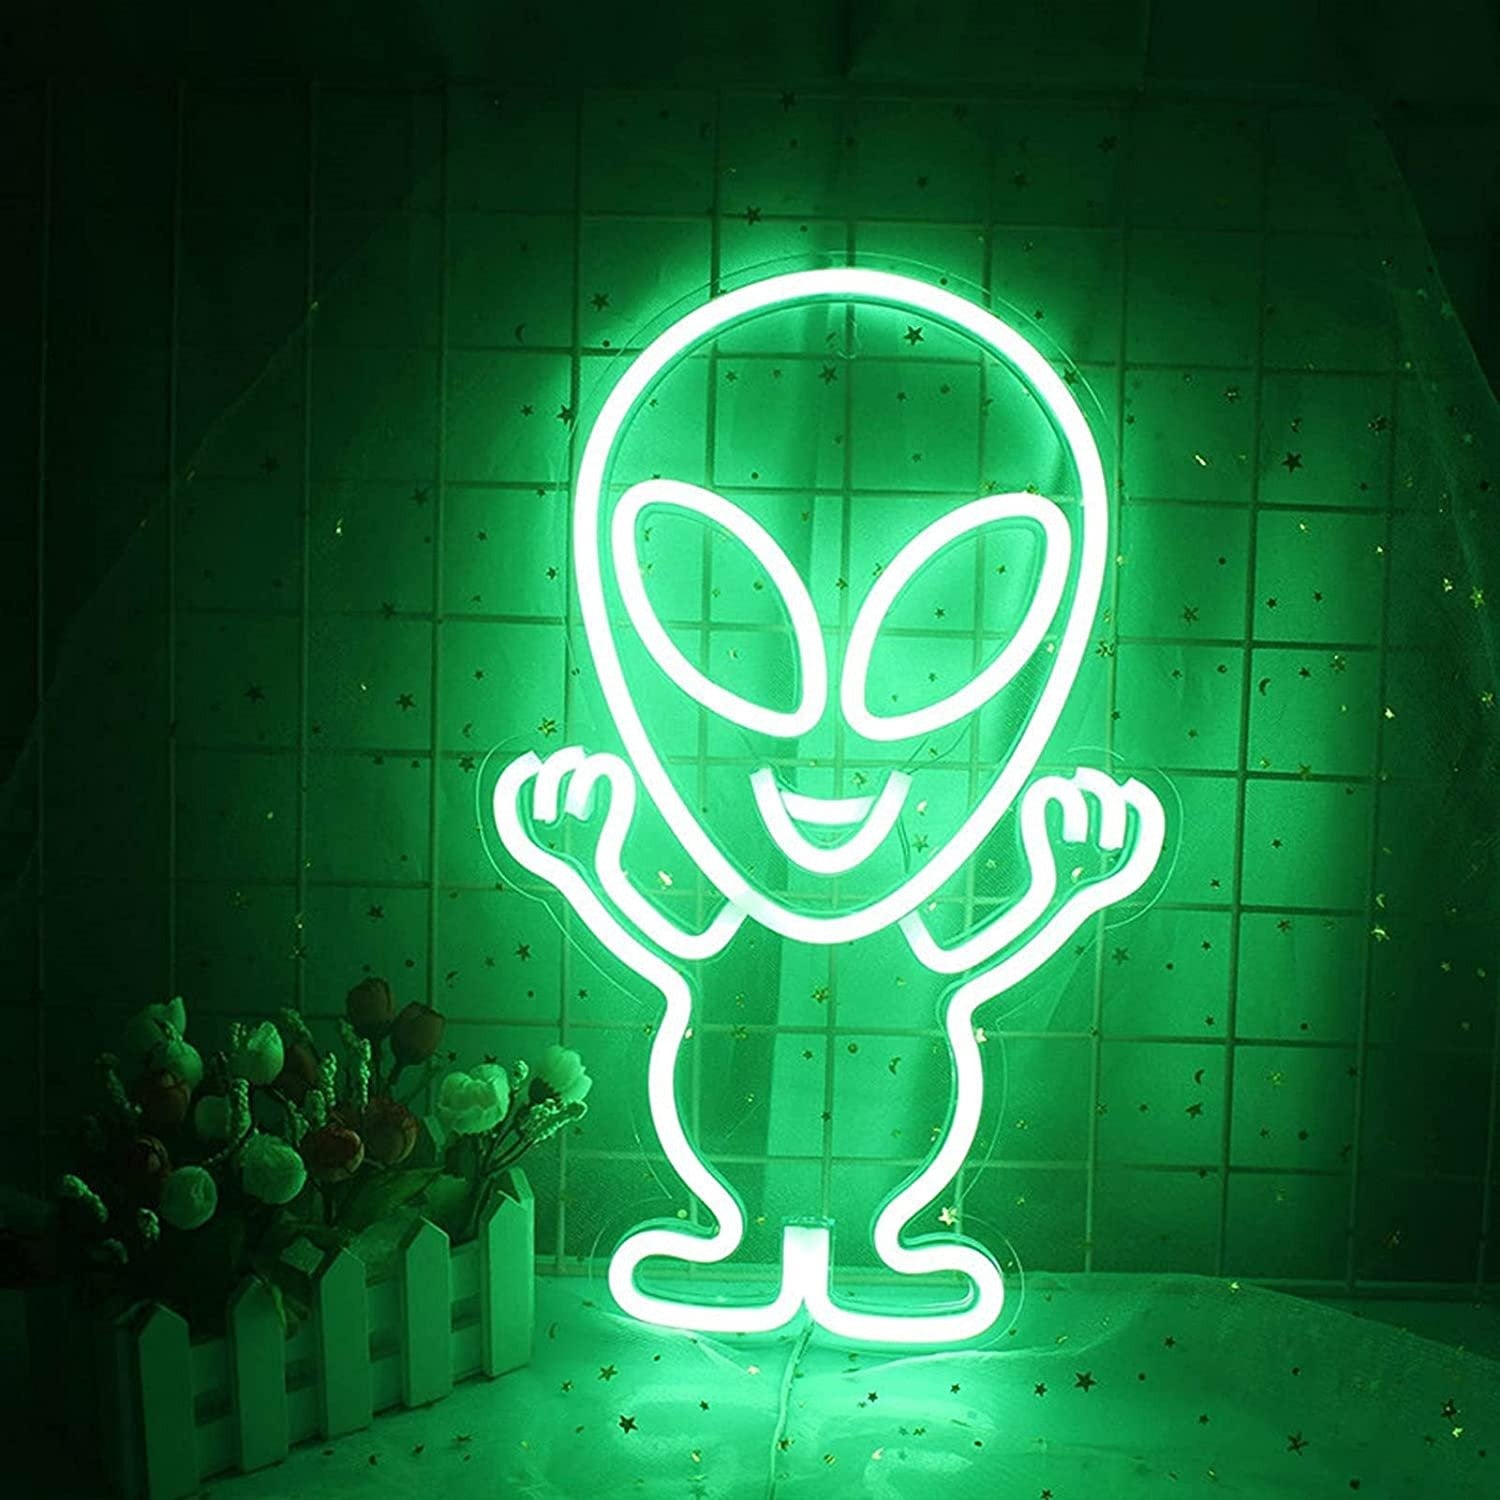 Fun Alien Neon Lights for Teenager’s Room